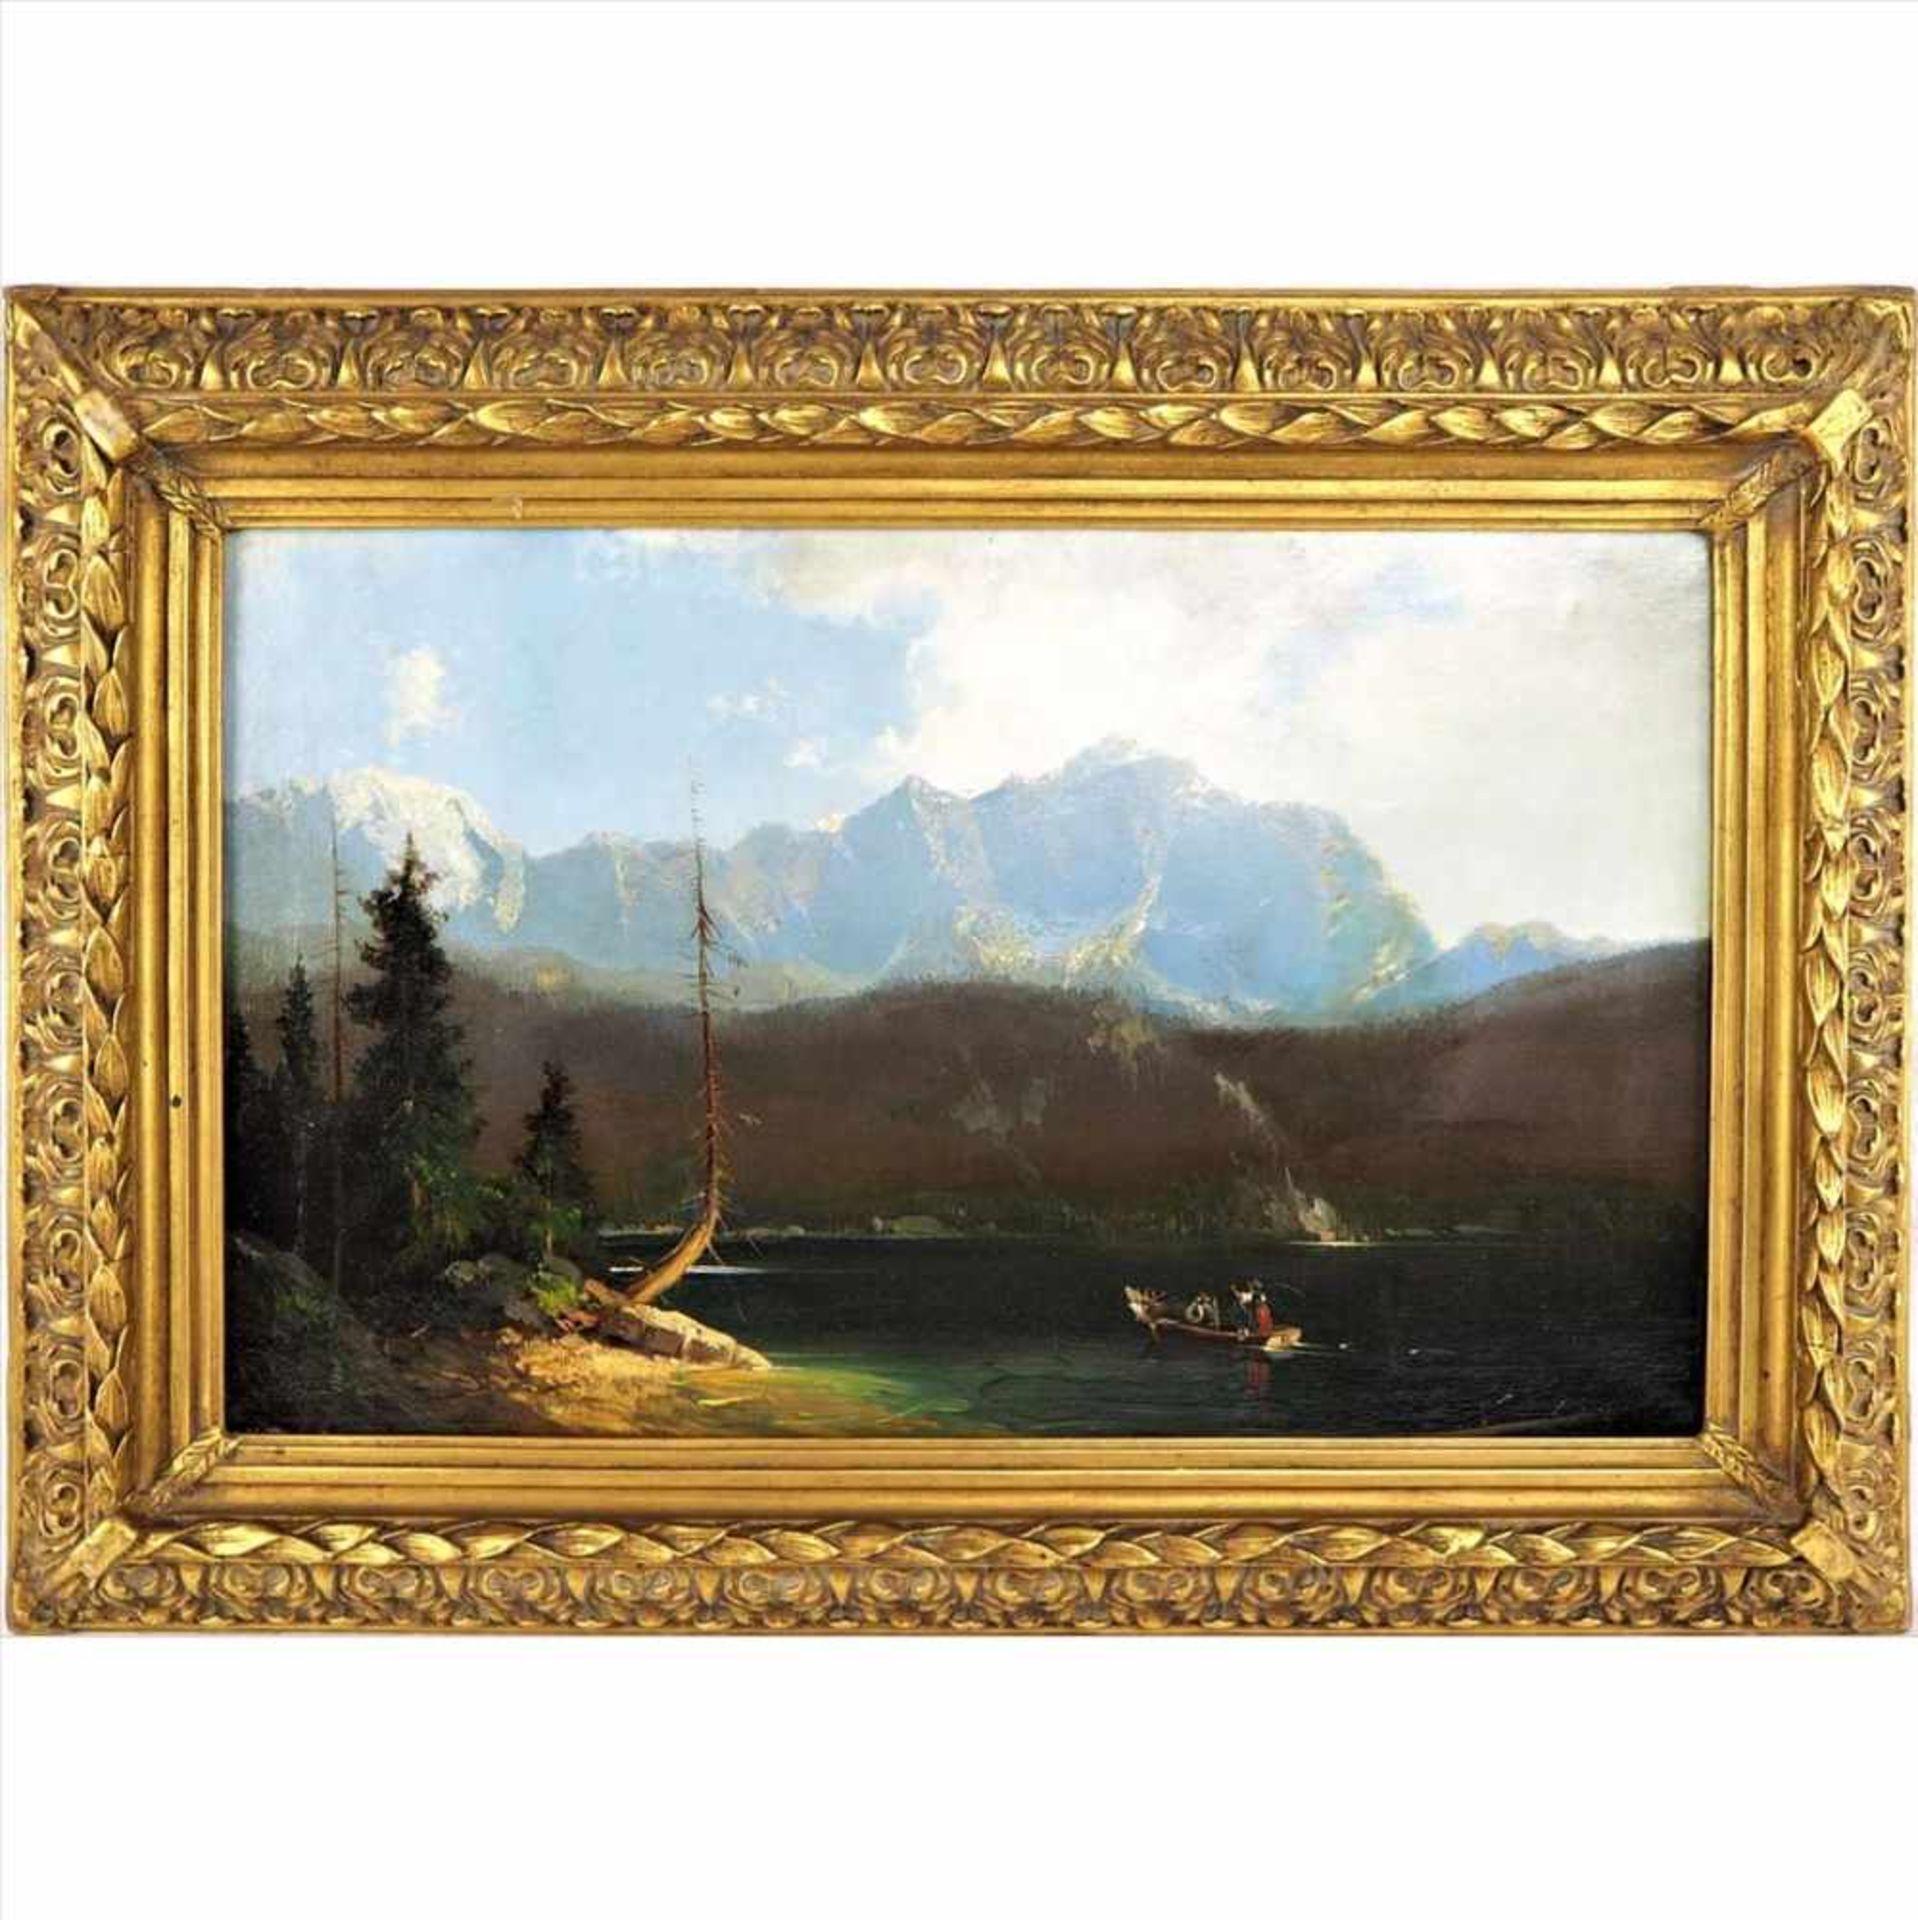 Romantische Gebirgslandschaft, um 1800Romantische Gebirgslandschaft mit See und Boot im Vordergrund.